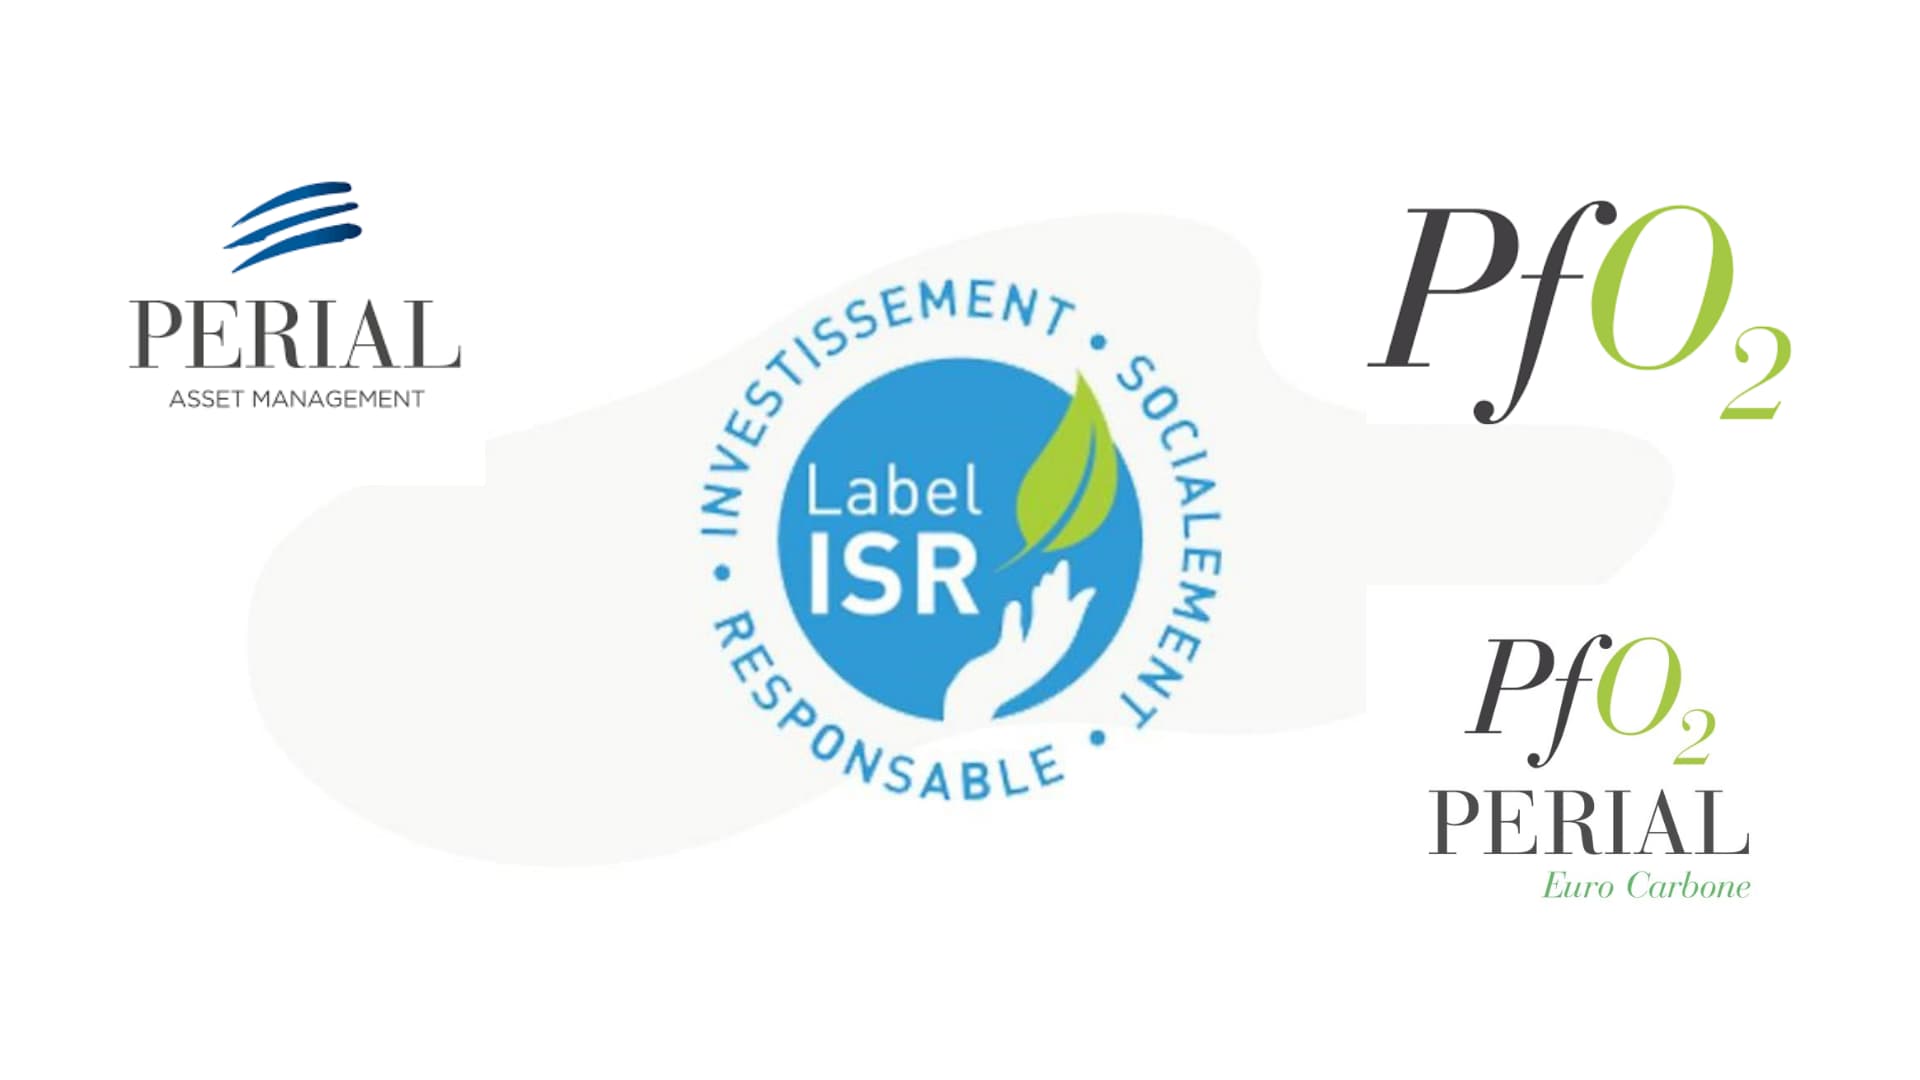 Perial_Asset_Management_annonce_la_labellisation_ISR_de_ses_fonds